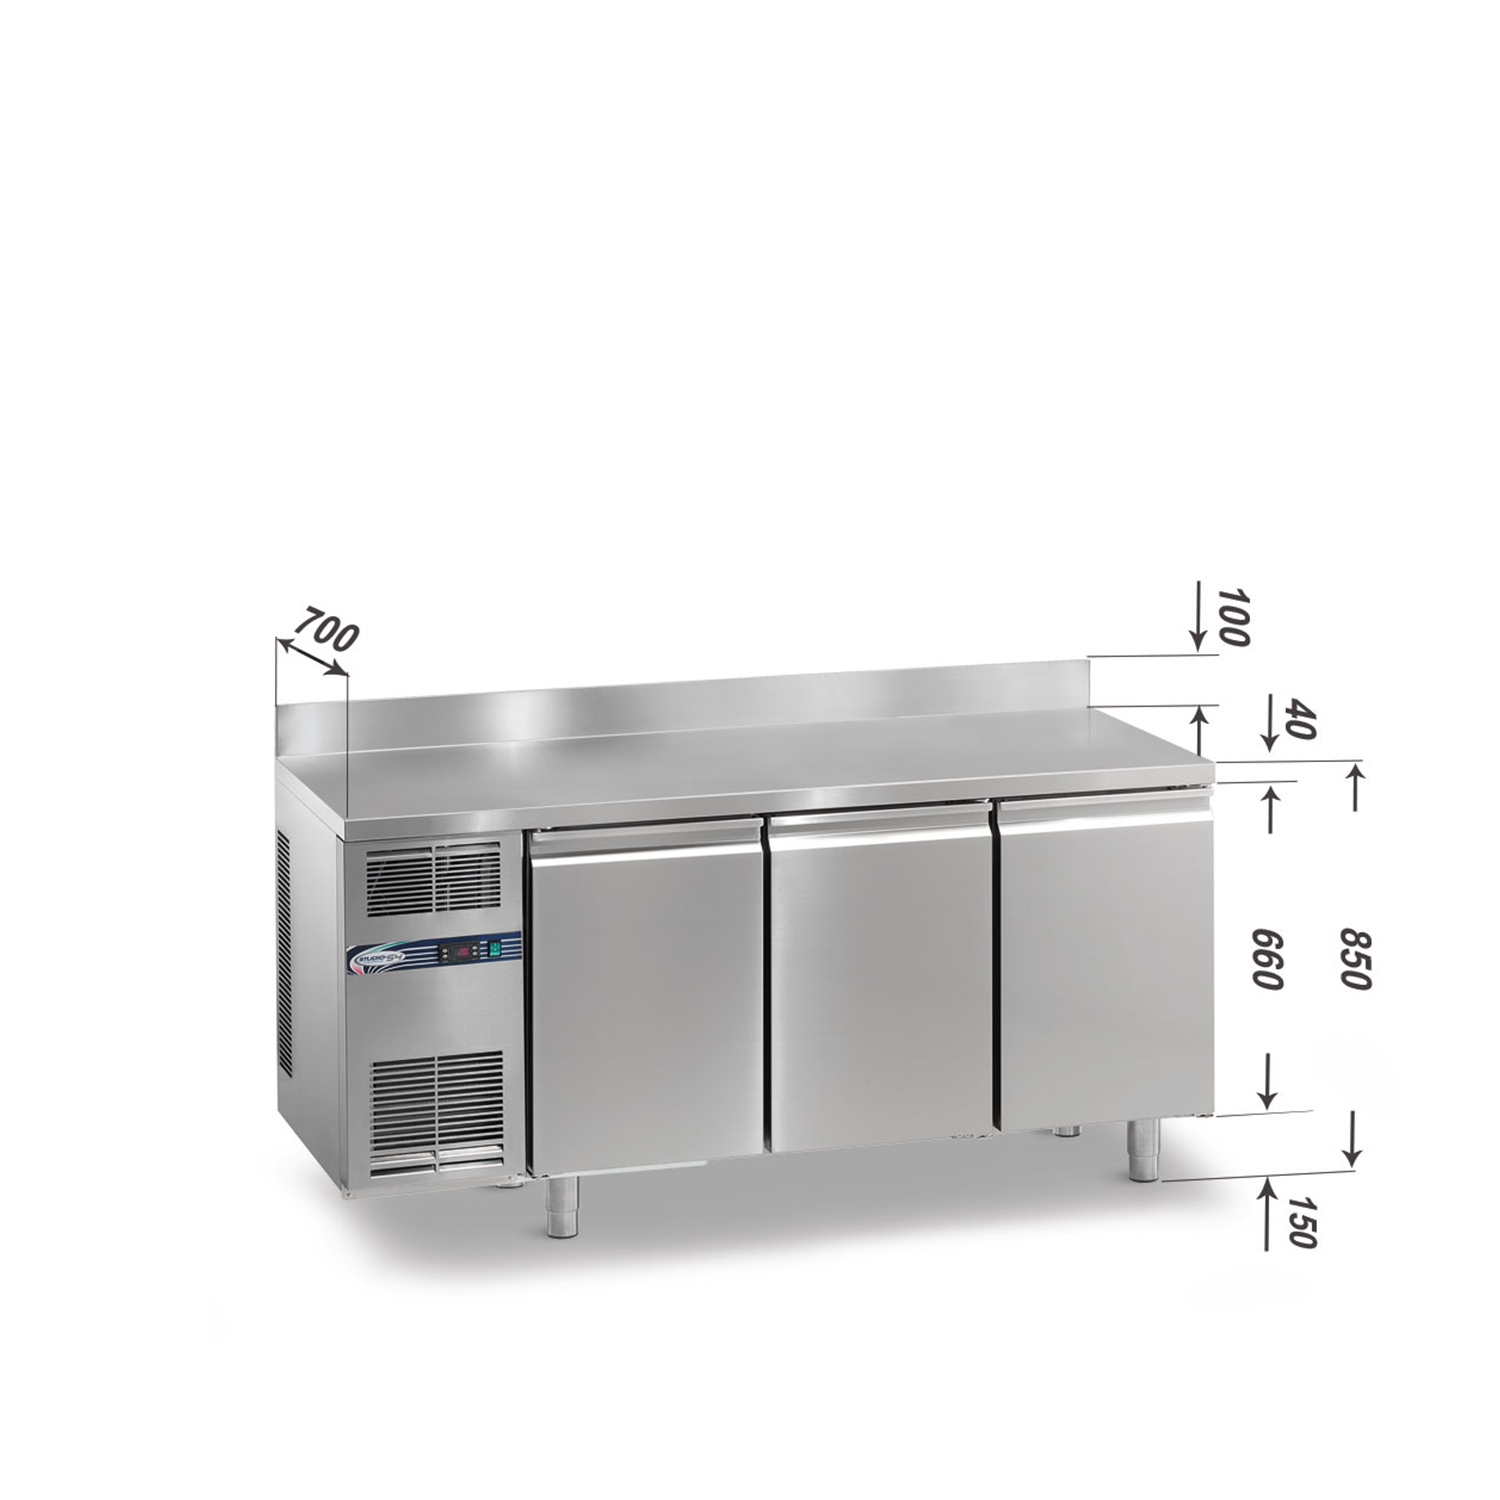 Tiefkühltisch DAIQUIRI Top Line H660 GN 1/1, B 1740  x T 700 x H 850+100 mm, 3 Kühlfächer, Arbeitsplatte mit Aufkantung